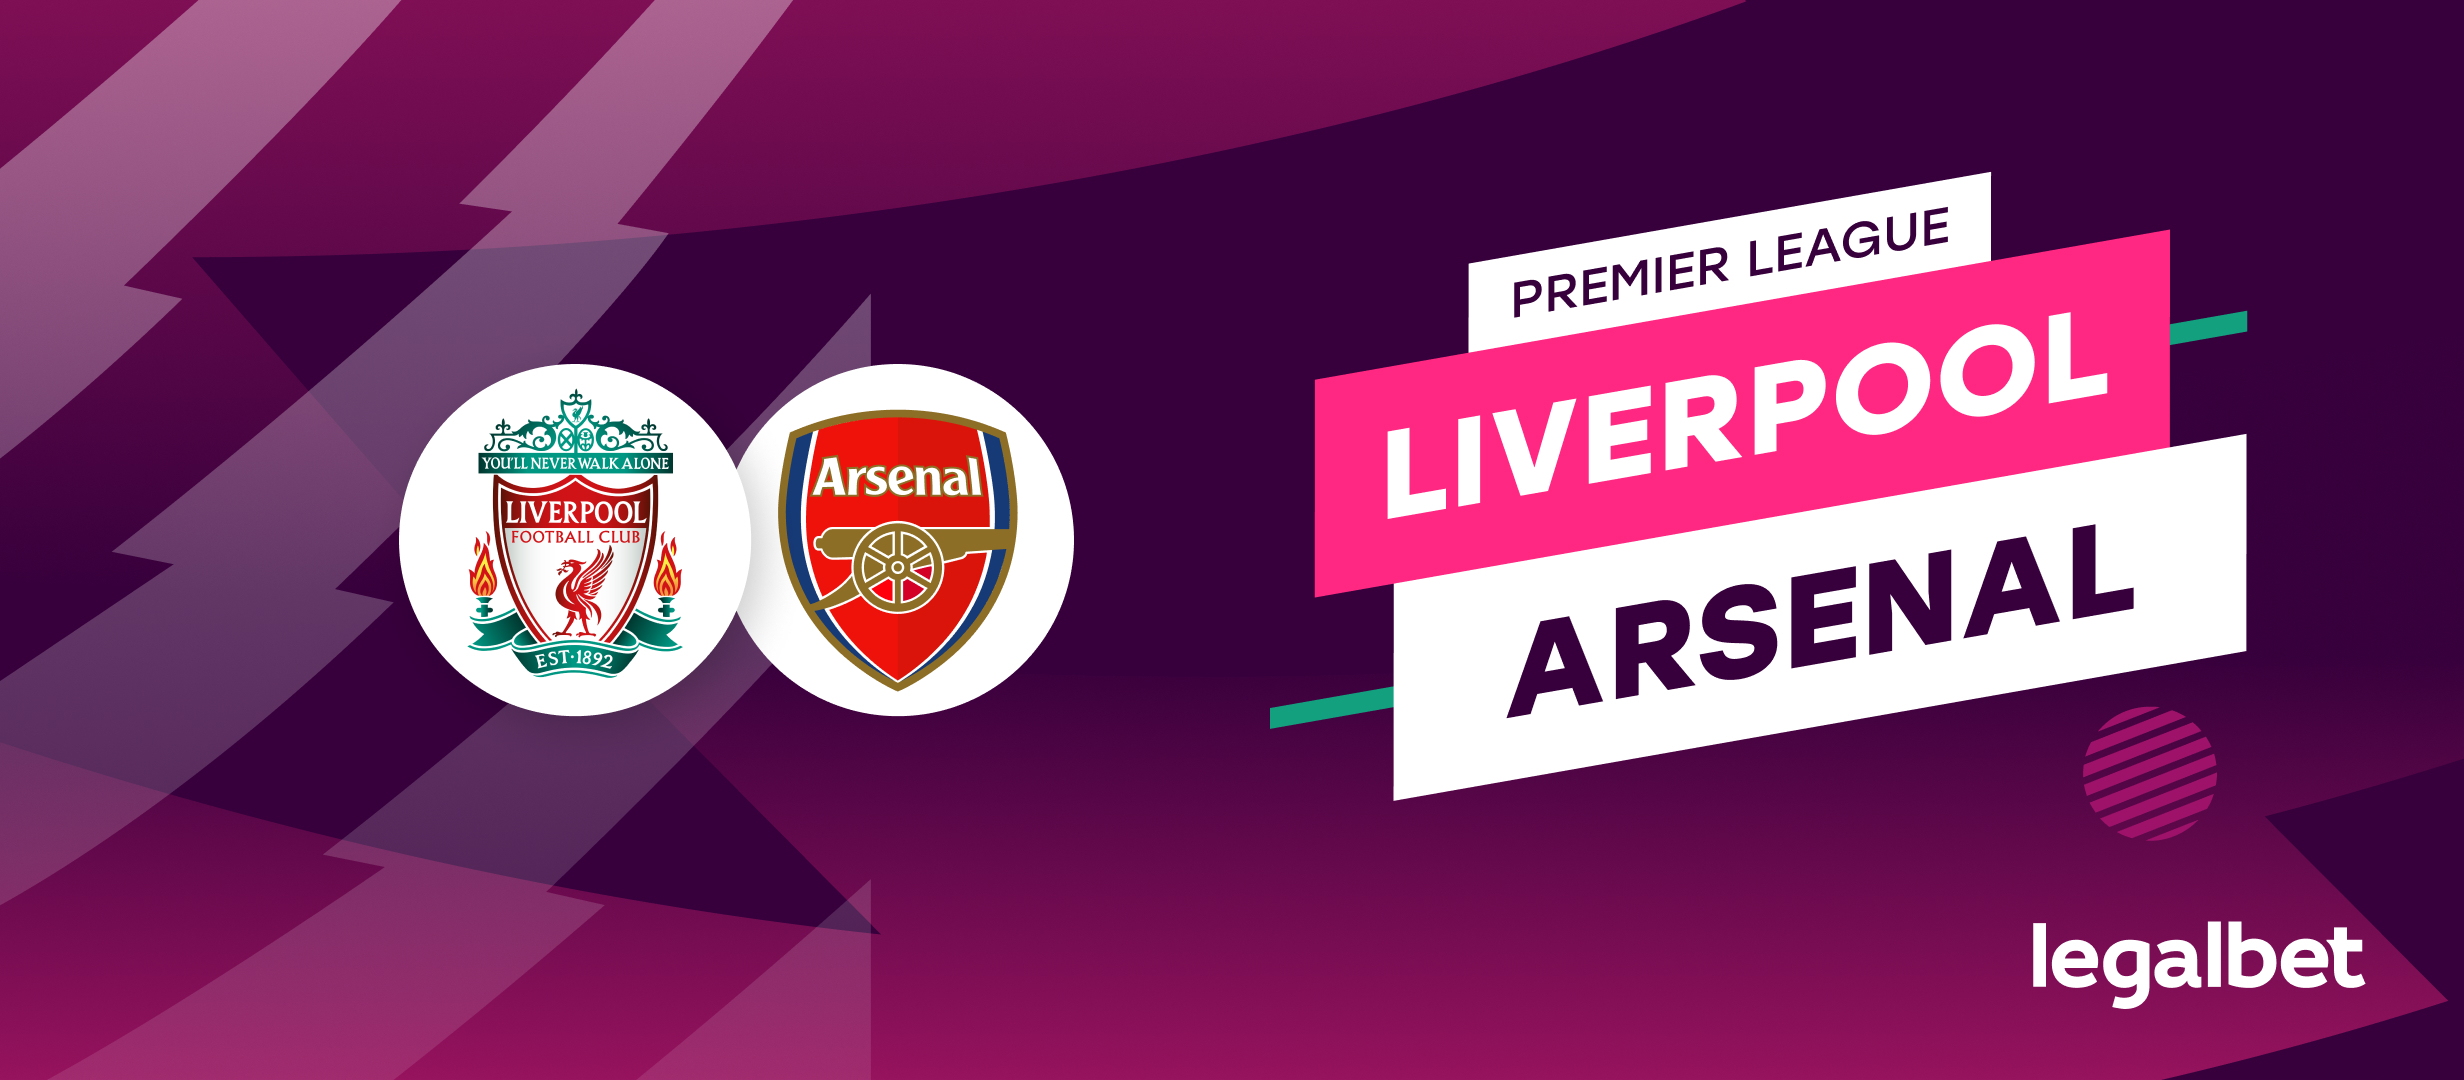 Liverpool - Arsenal, ponturi la pariuri Premier League